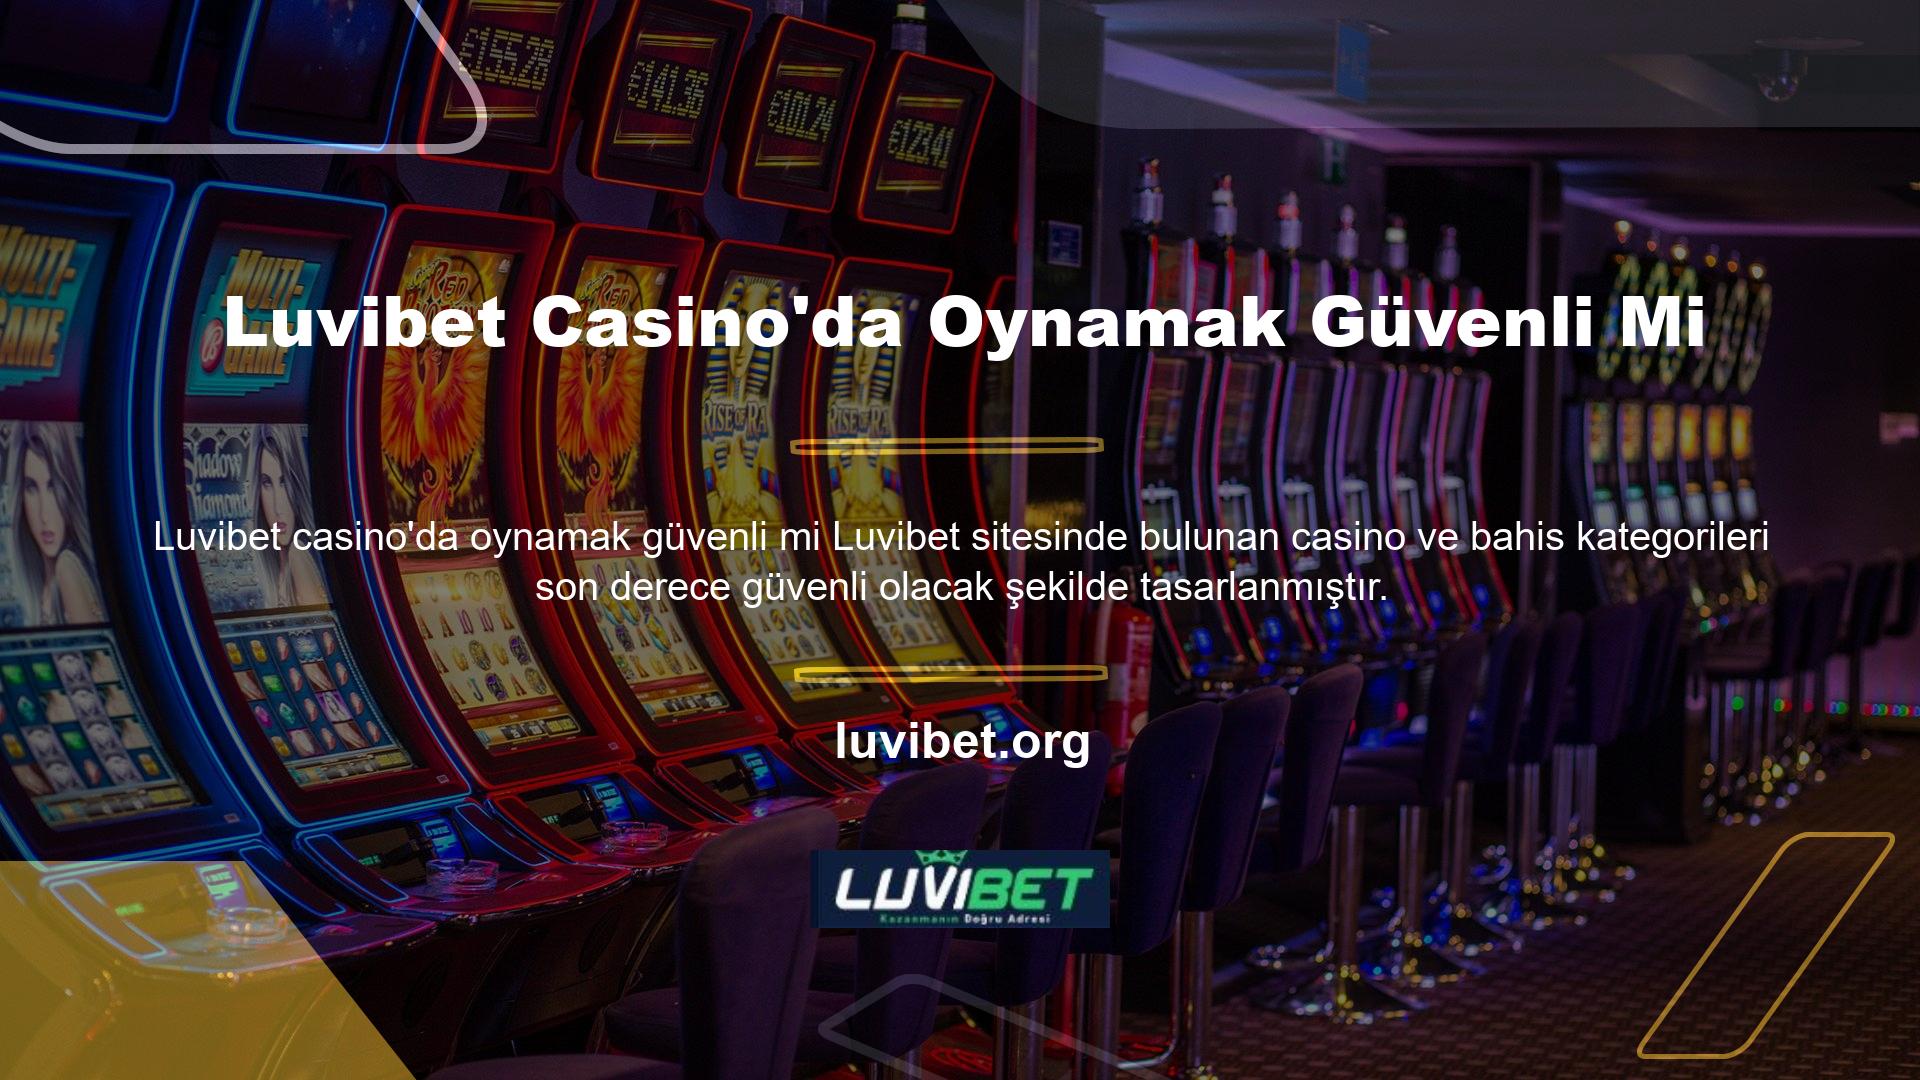 Luvibet web sitesi her zaman güvenlik standartlarını karşılayan bir hizmeti garanti eder, bu nedenle casino oyunları oynarken herhangi bir şüphe duymanıza gerek yoktur